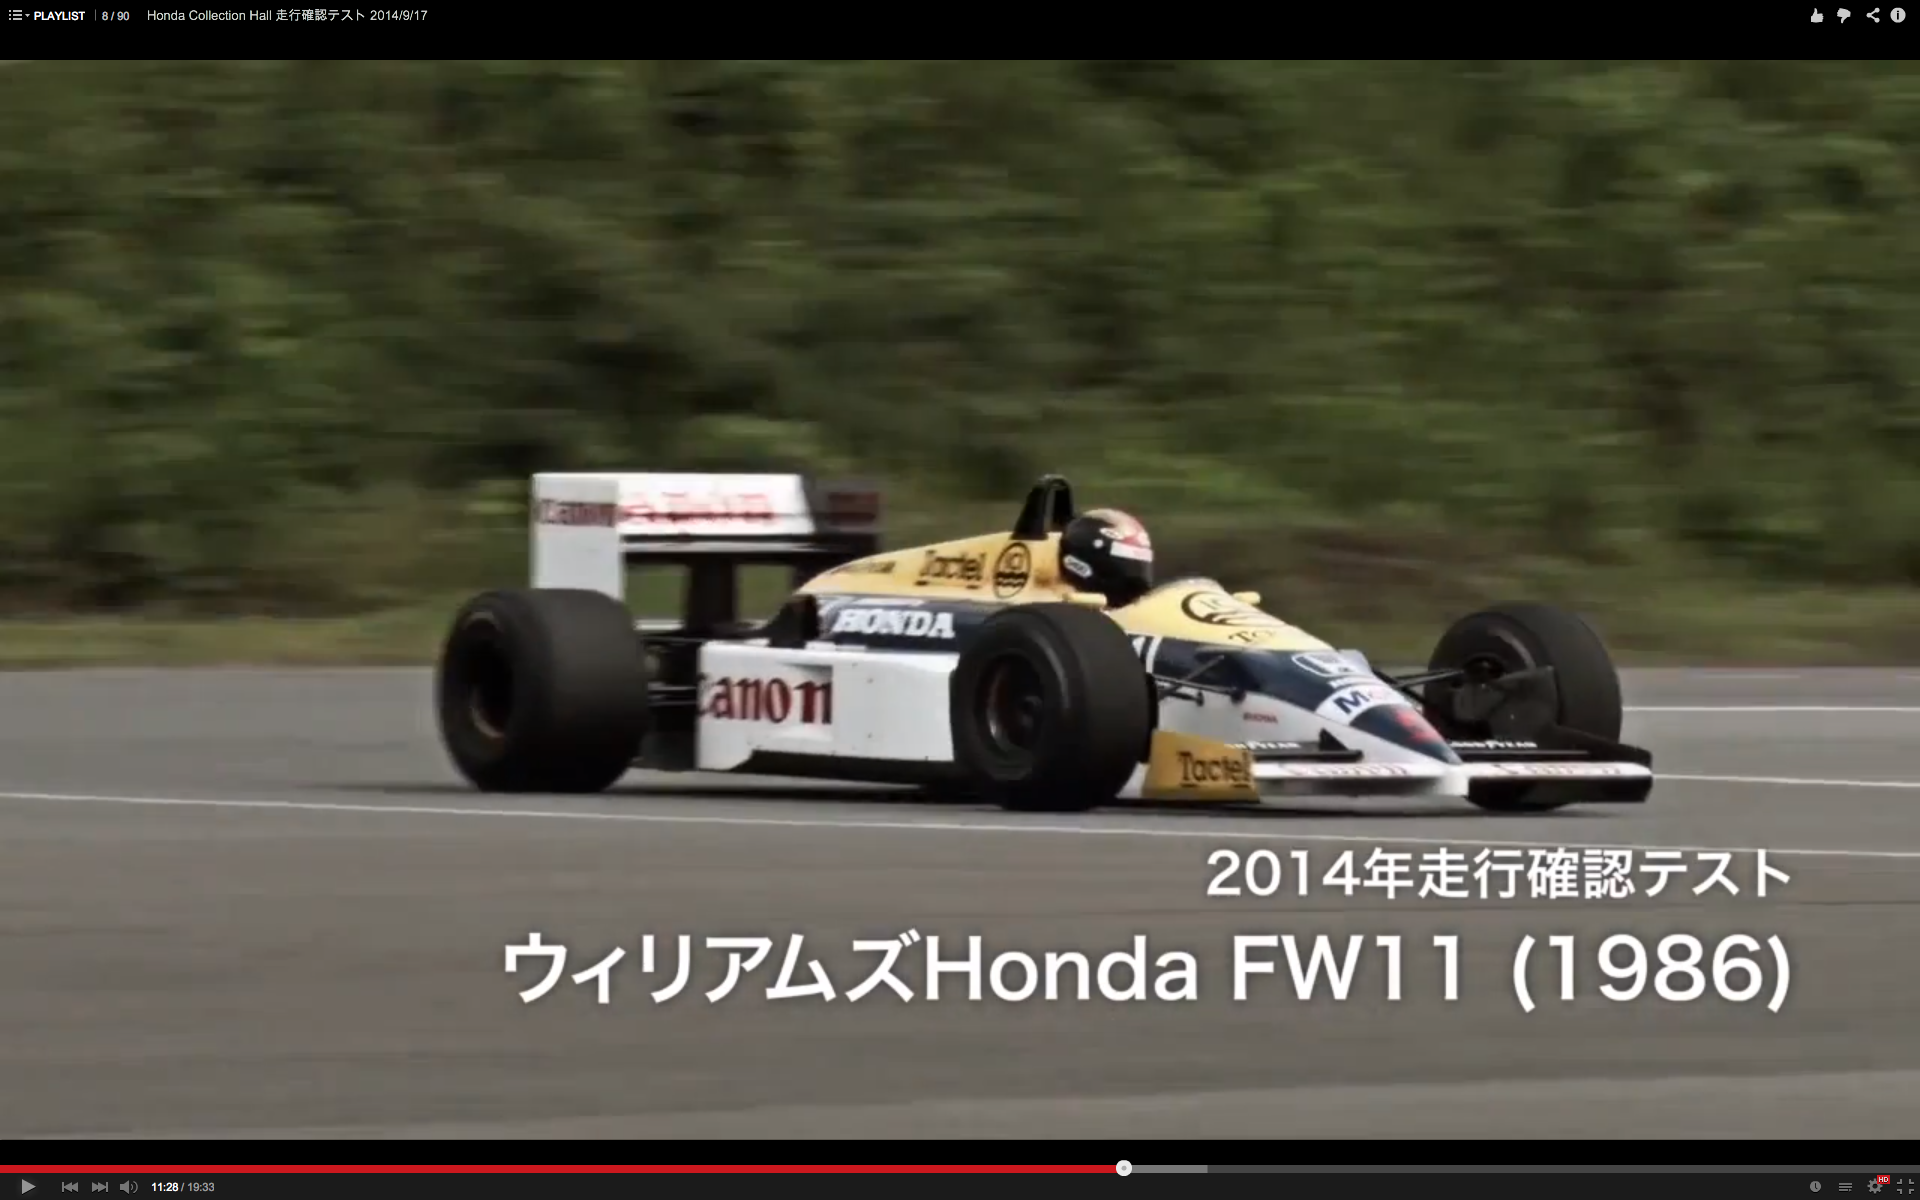 Honda Test 02 画像 80年代のf1も走った もてぎの走行確認テストが贅沢すぎる 動画 Clicccar Com